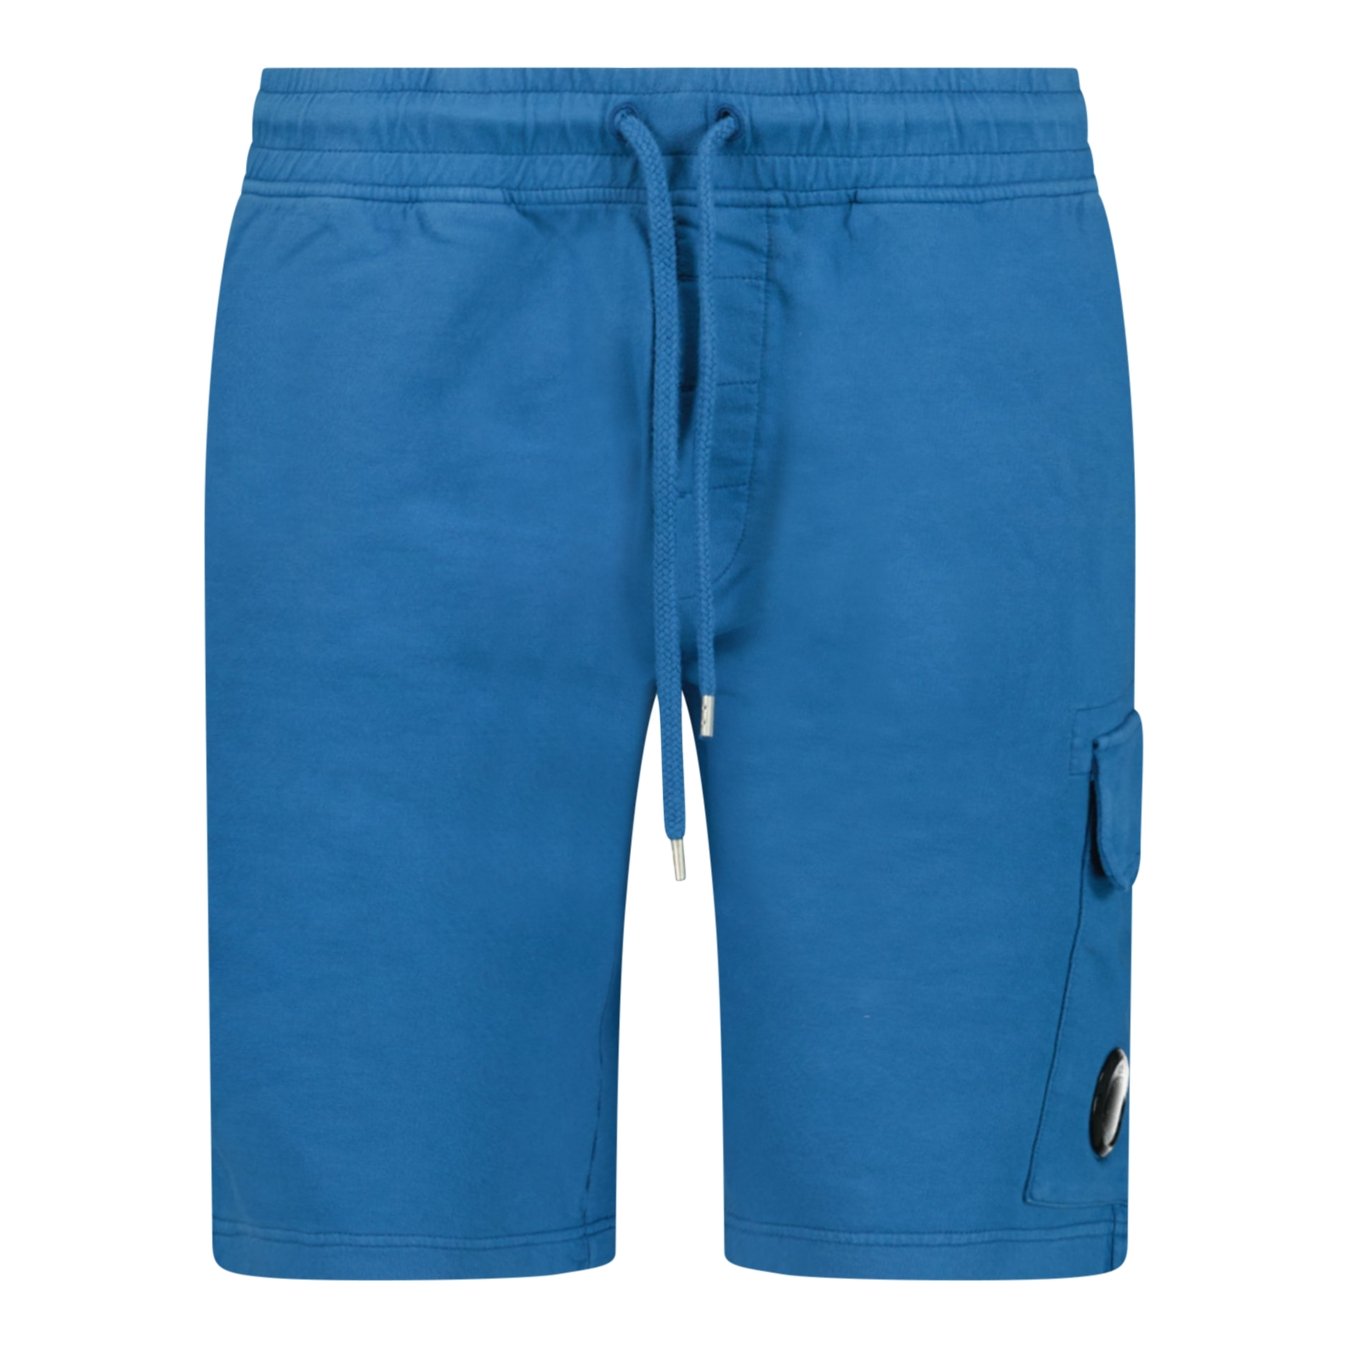 CP Company Bermuda Cotton Shorts Blue